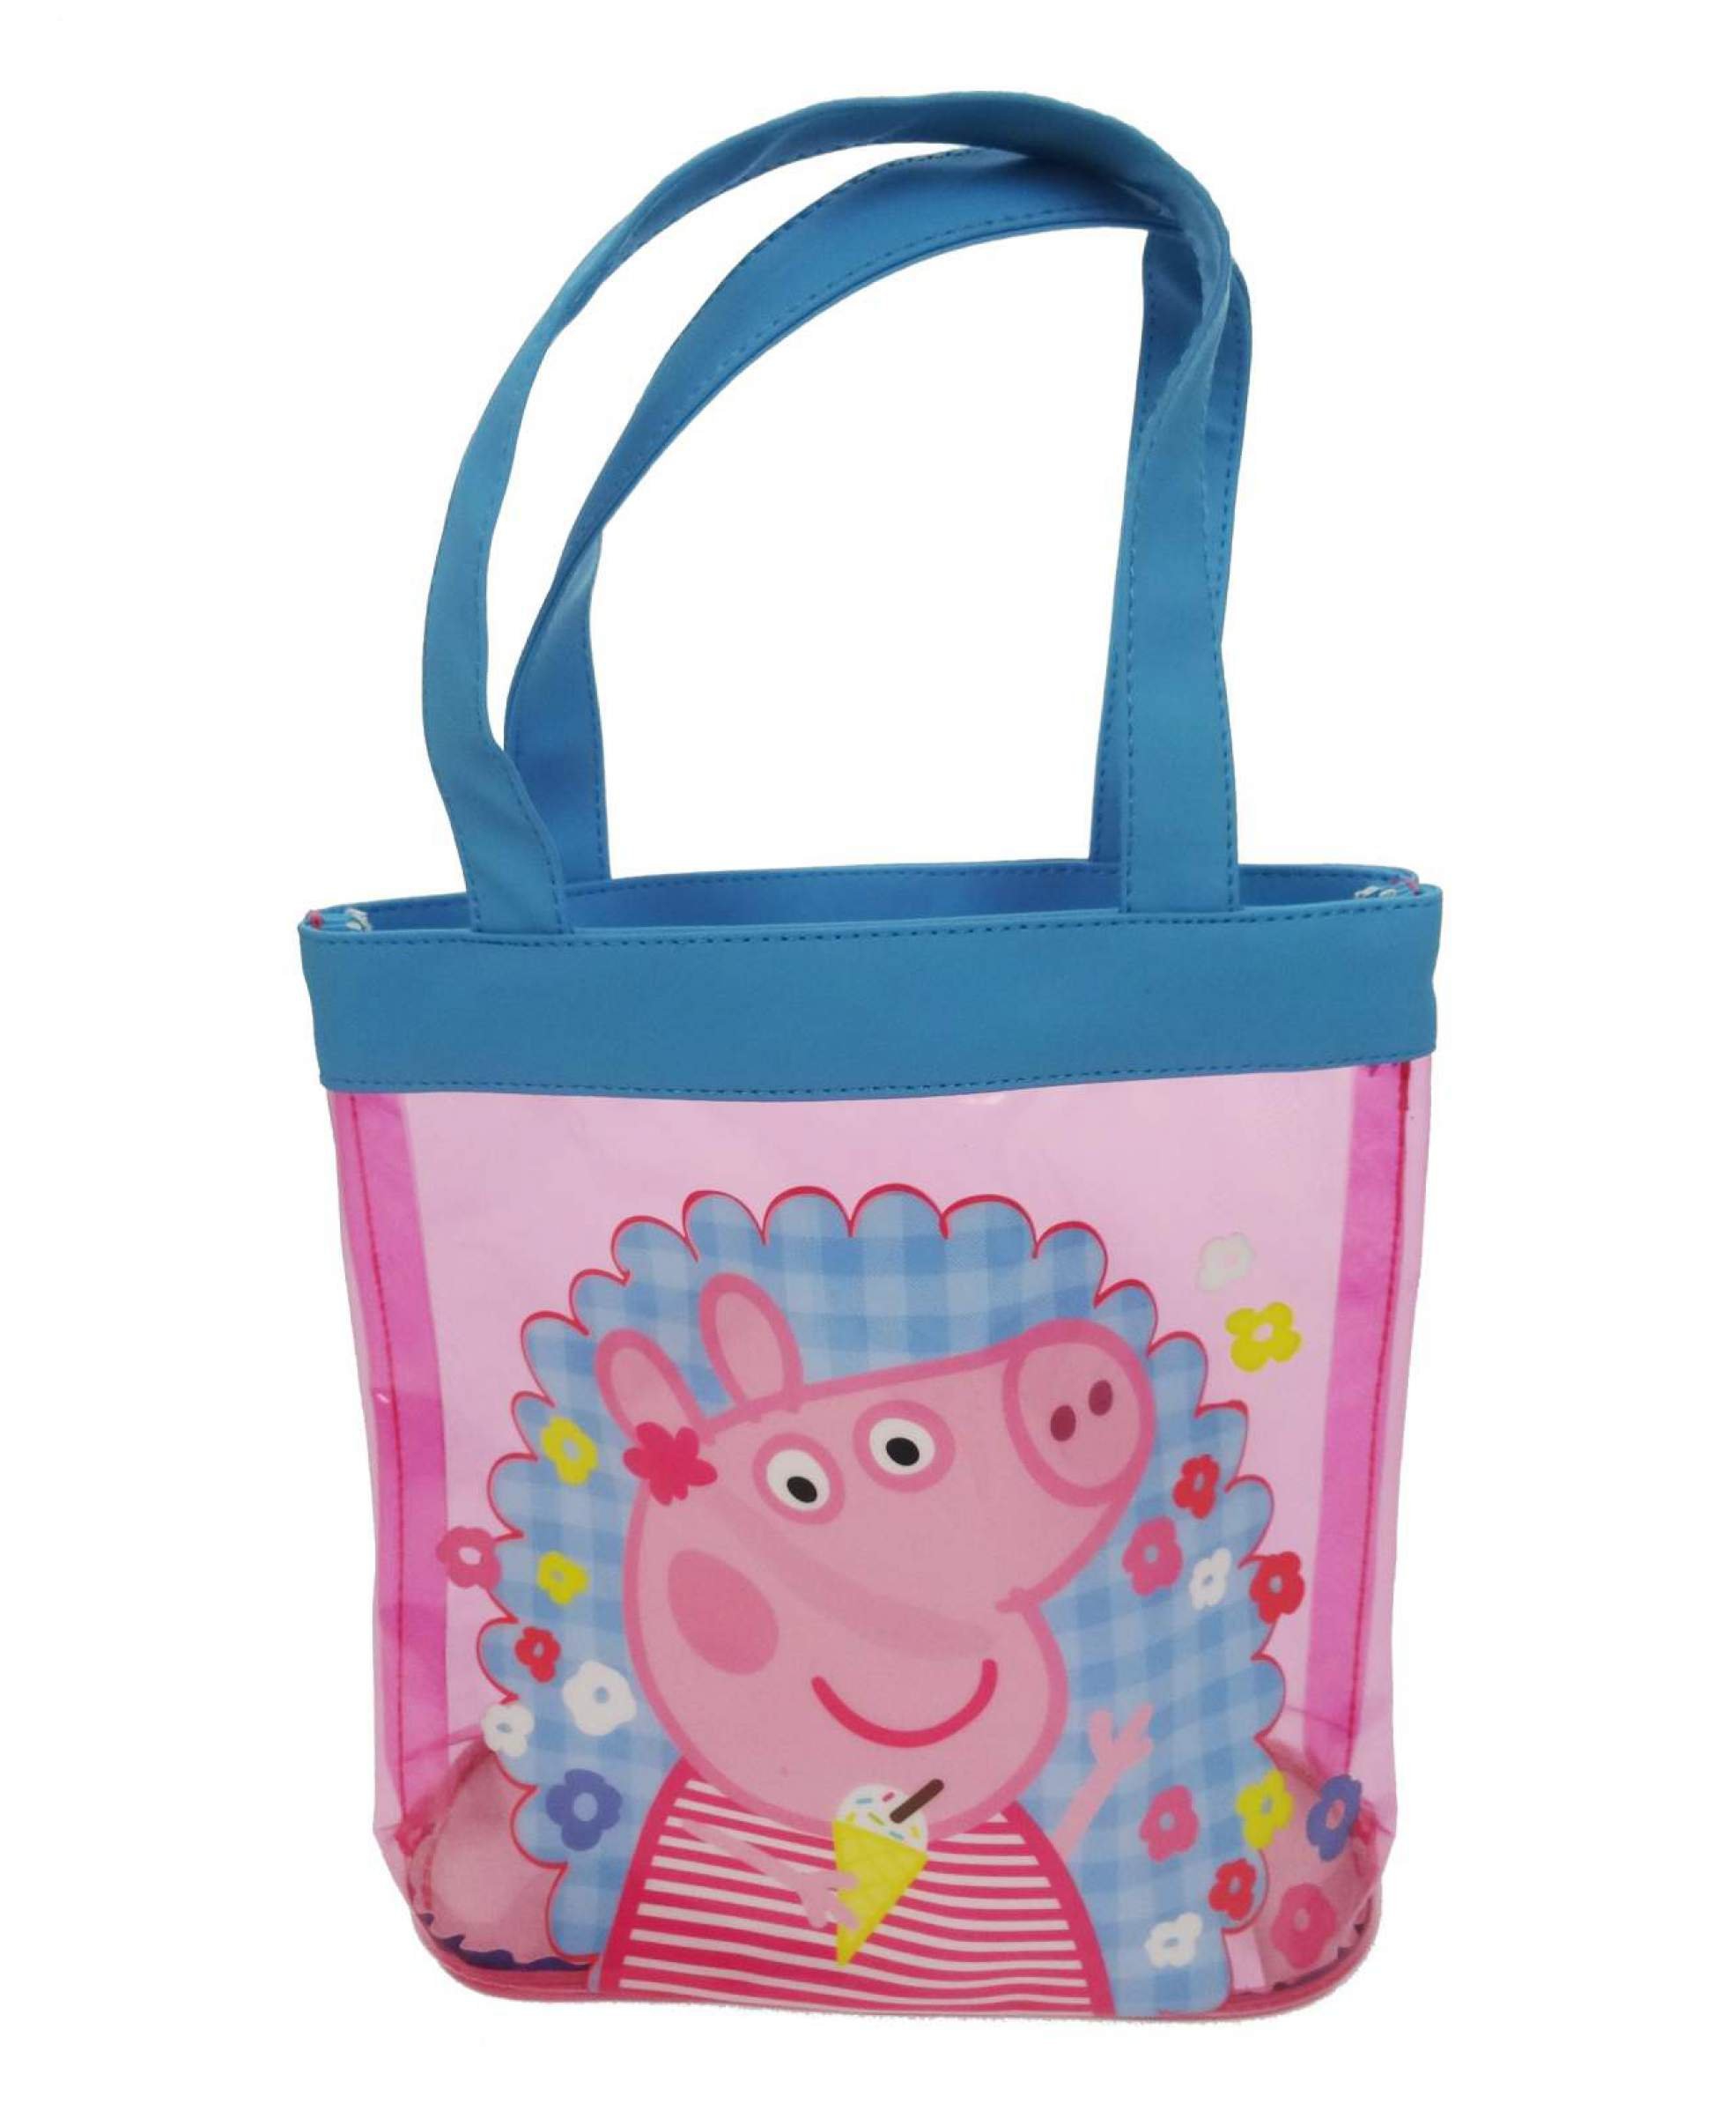 Peppa Pig 'Holiday' Pvc Tote Bag Shopping Shopper